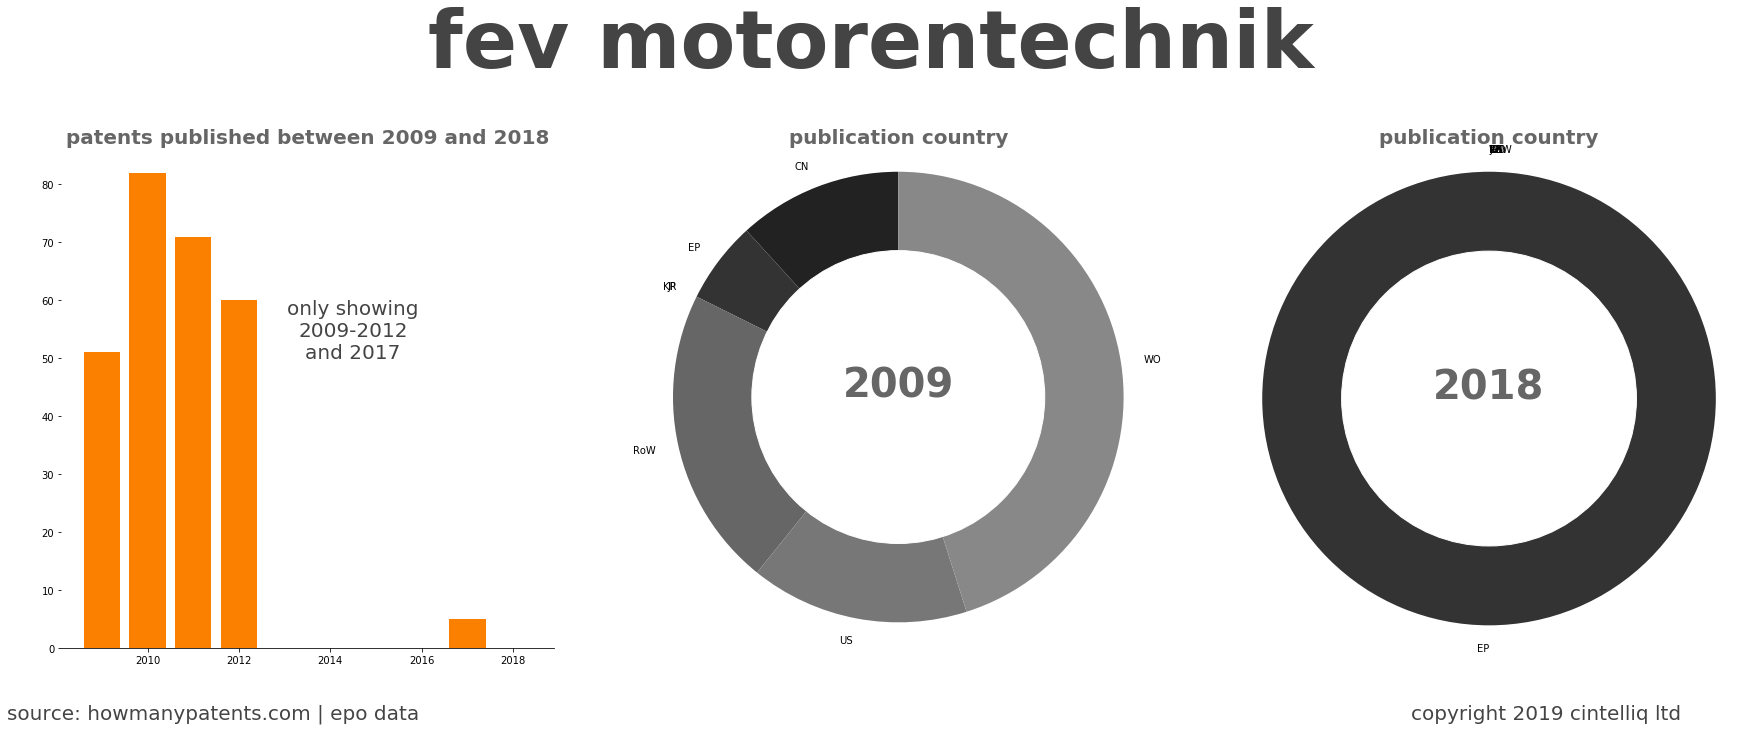 summary of patents for Fev Motorentechnik